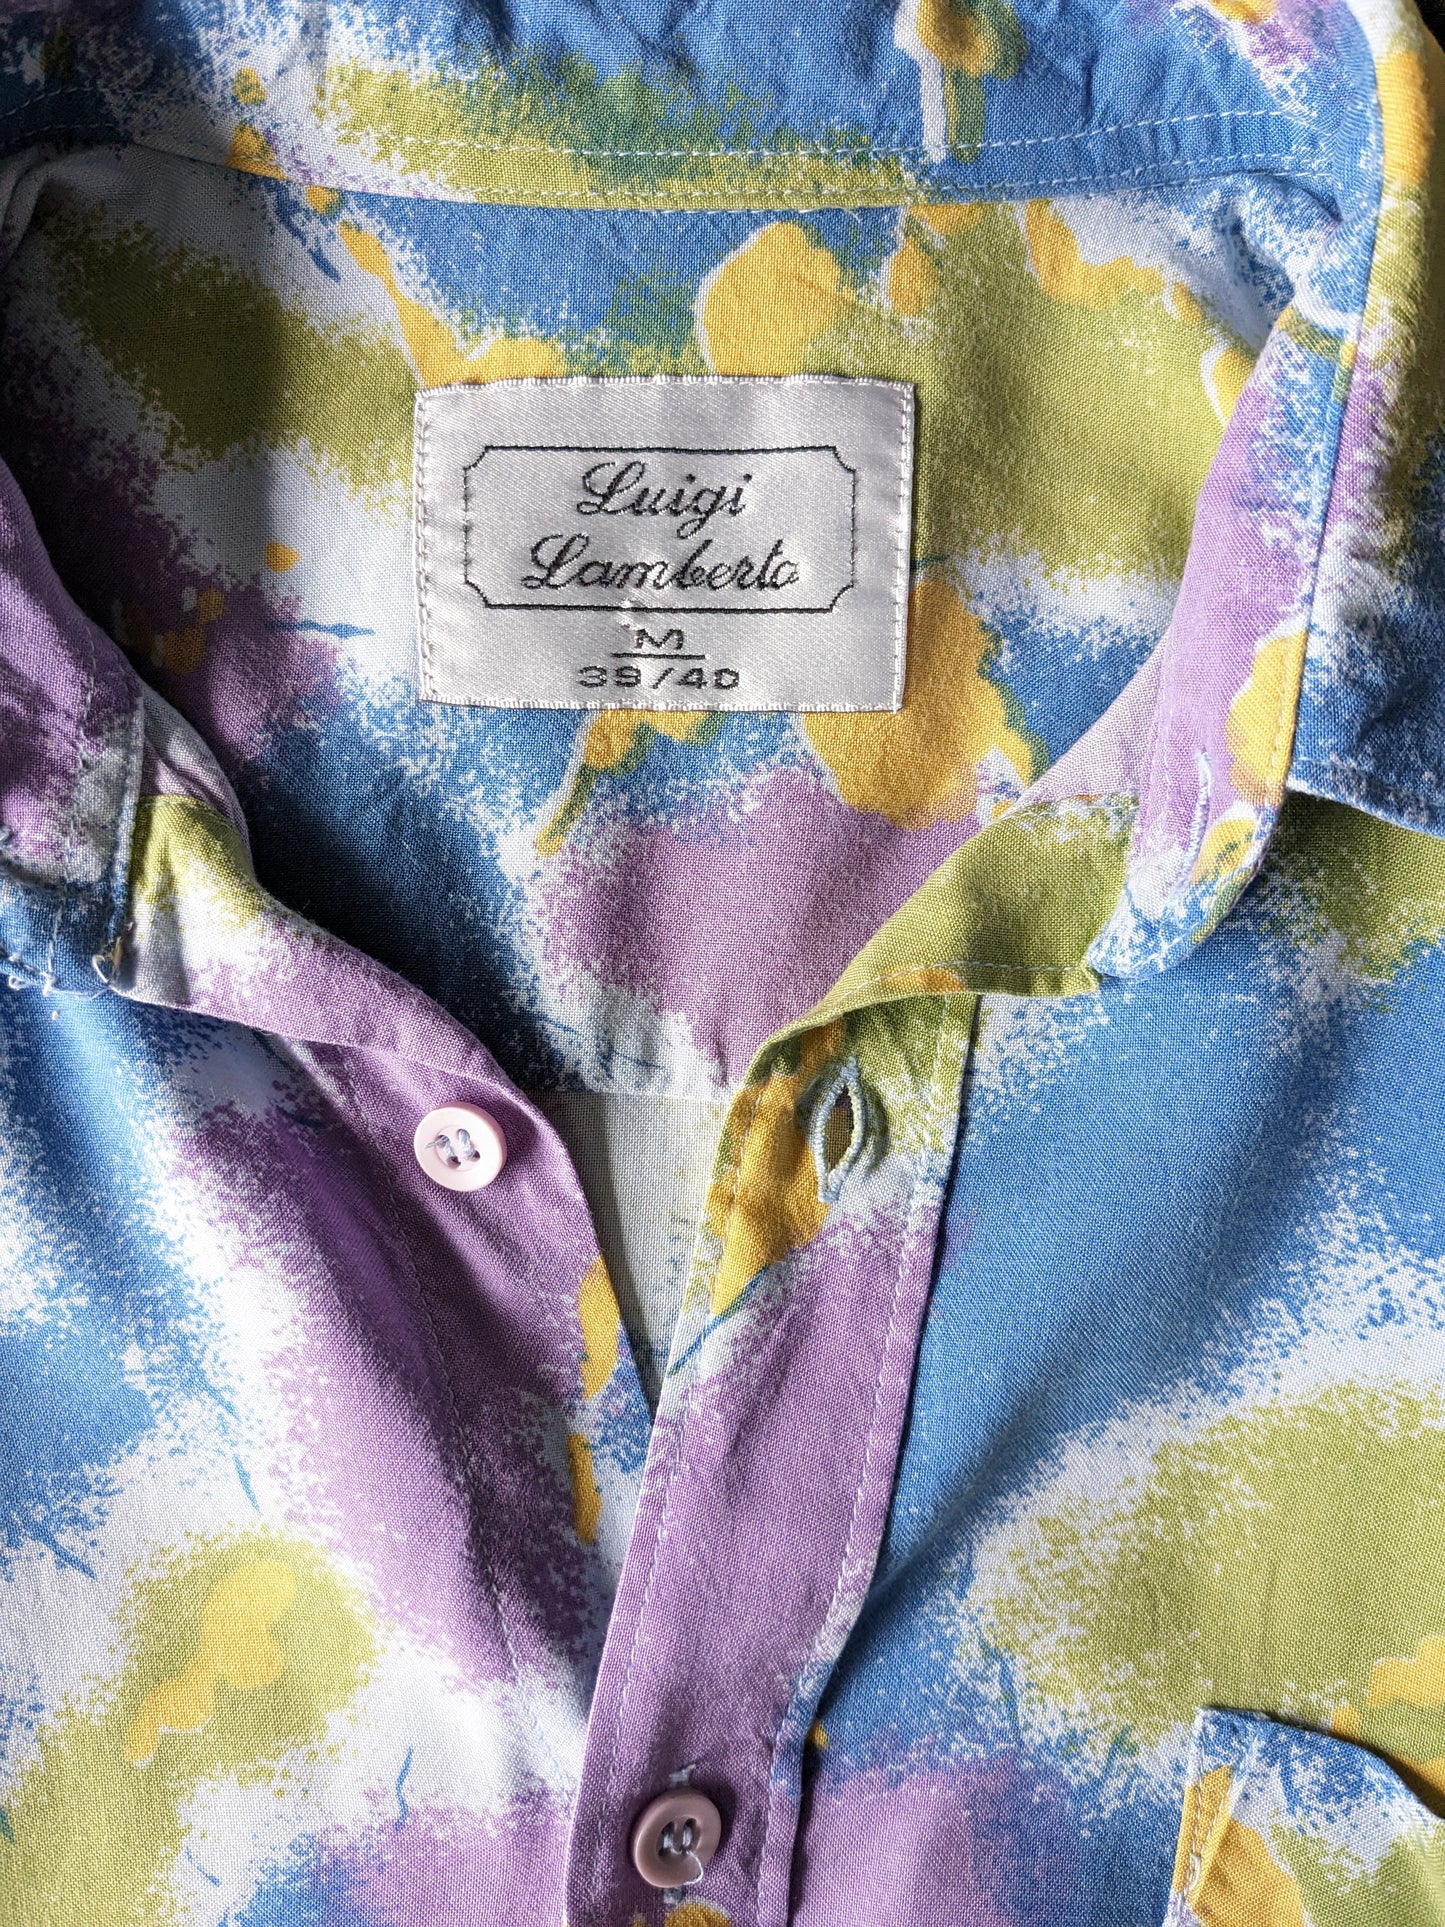 Vintage de la camisa Luigi Lamberto de los 90 manga corta. Blue verde impresa amarilla púrpura. Tamaño L / XL.